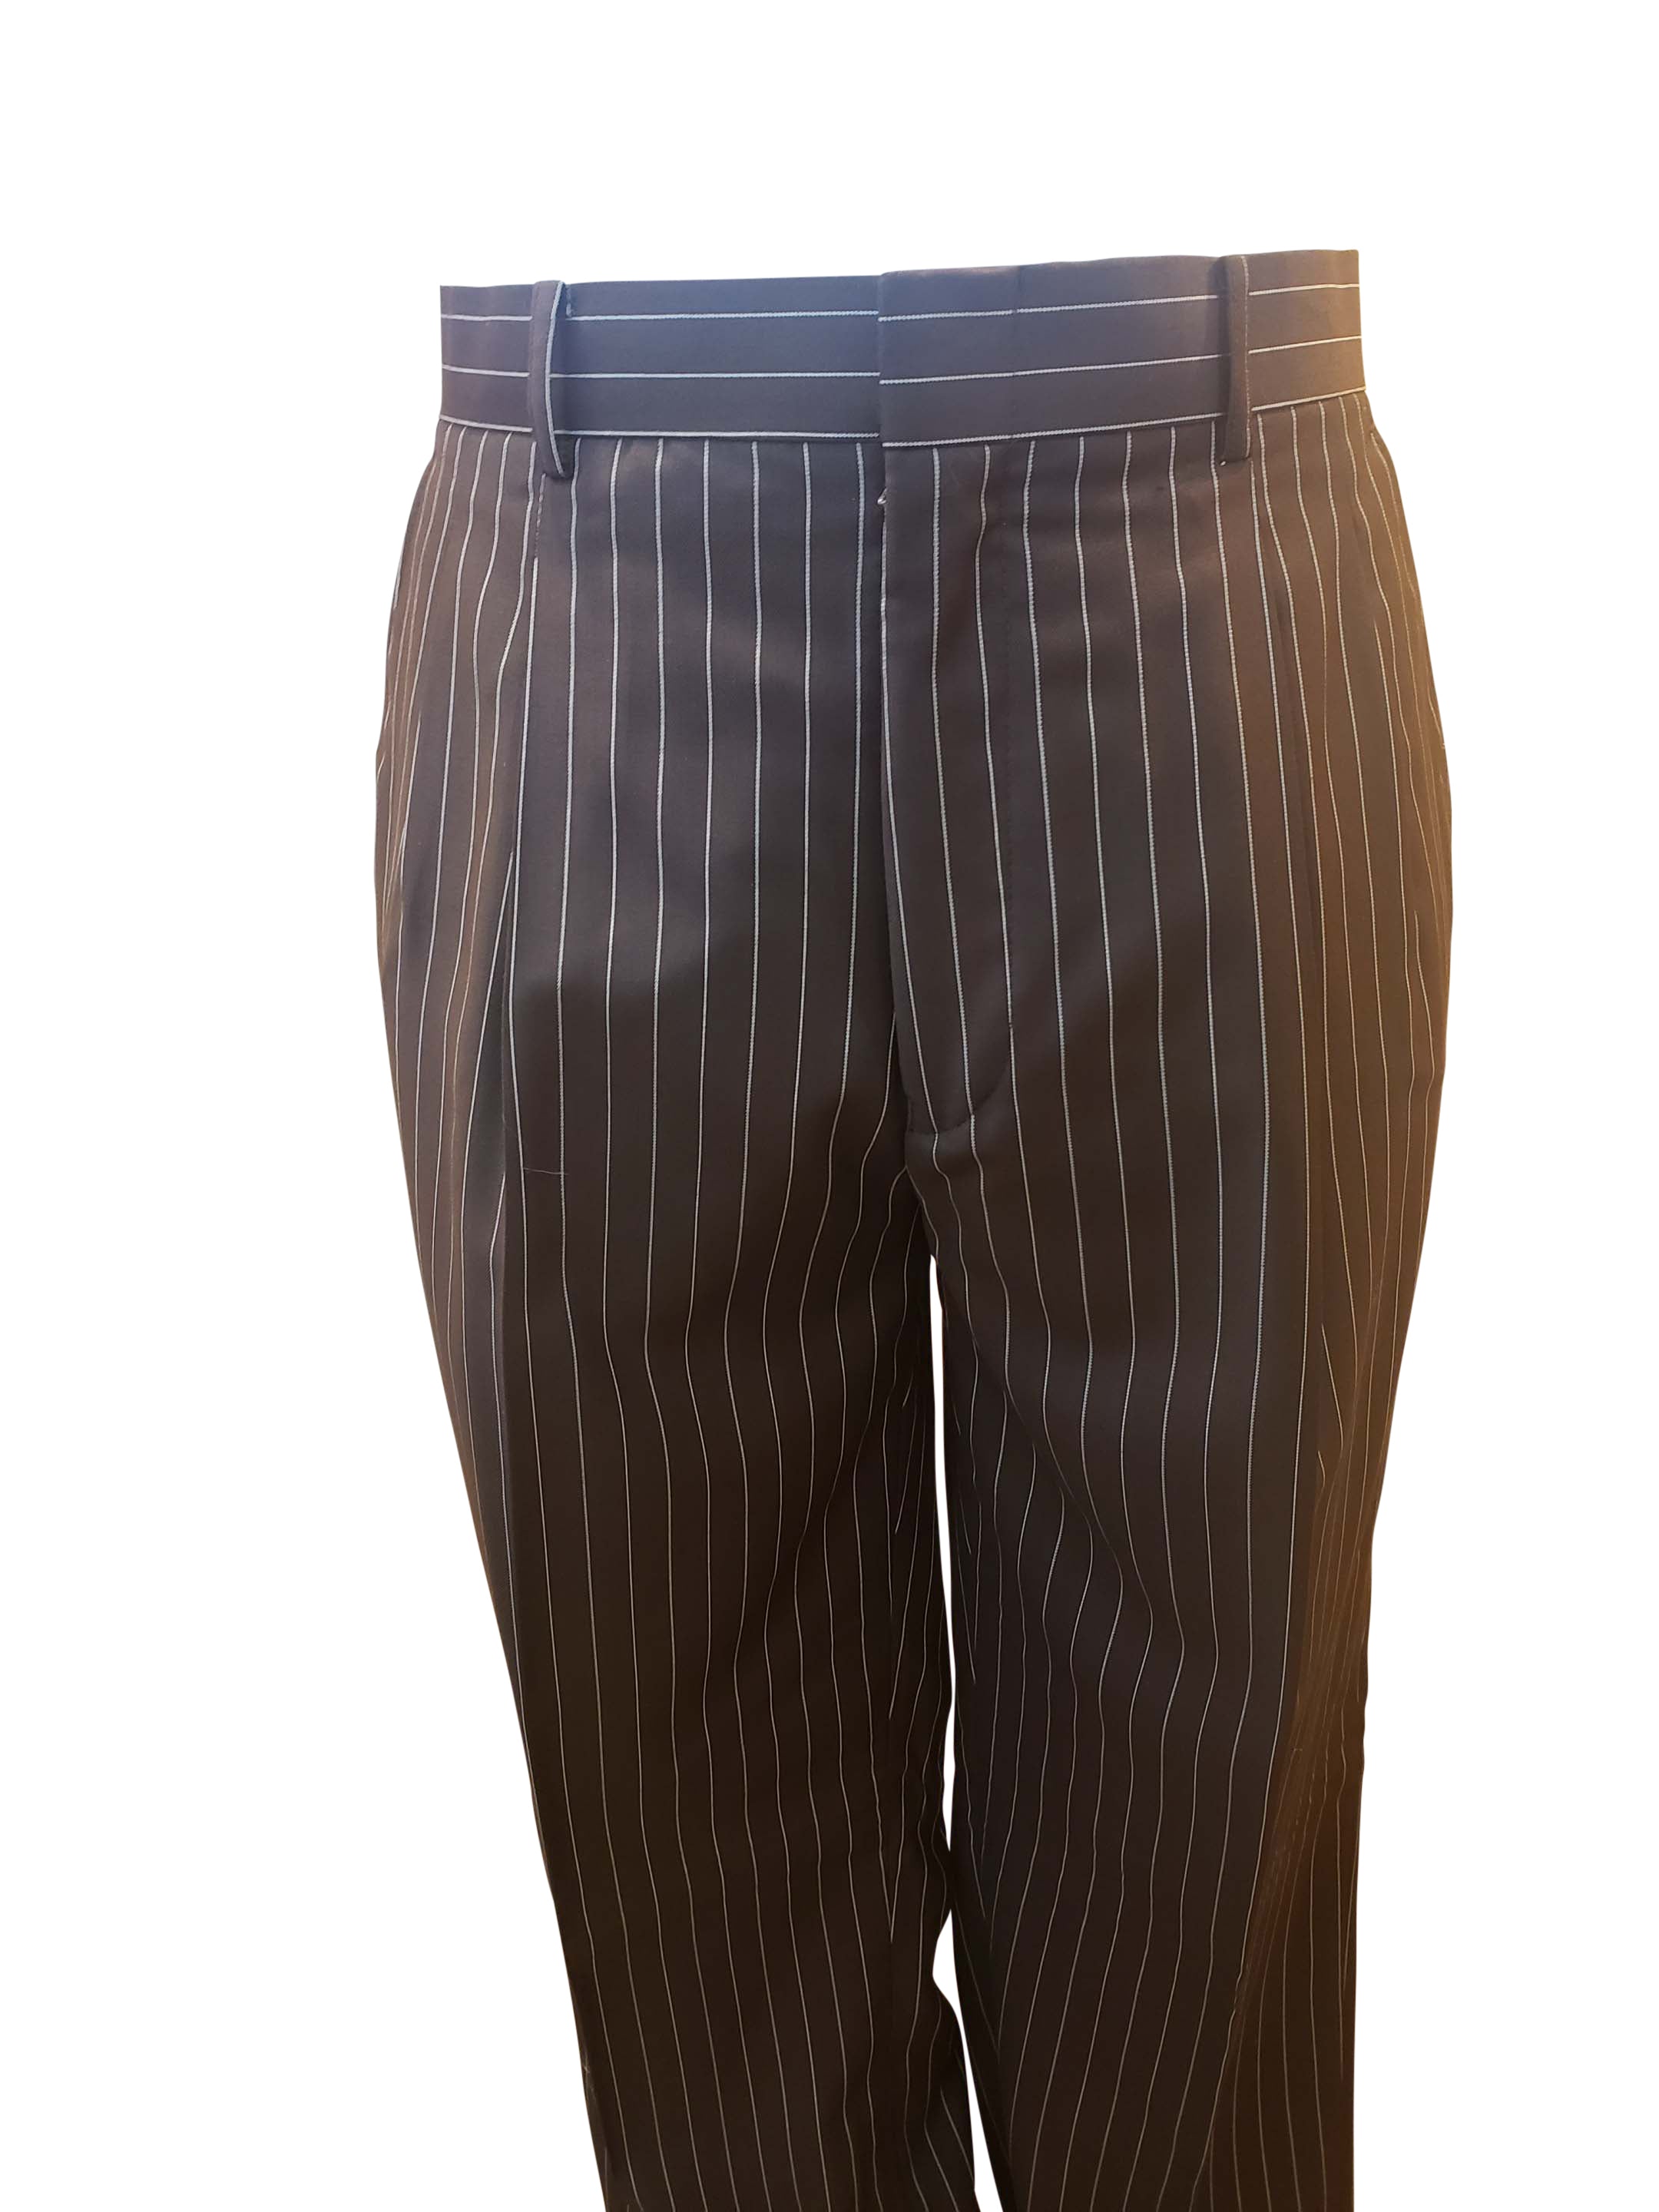 Vinci Pinstripe suit